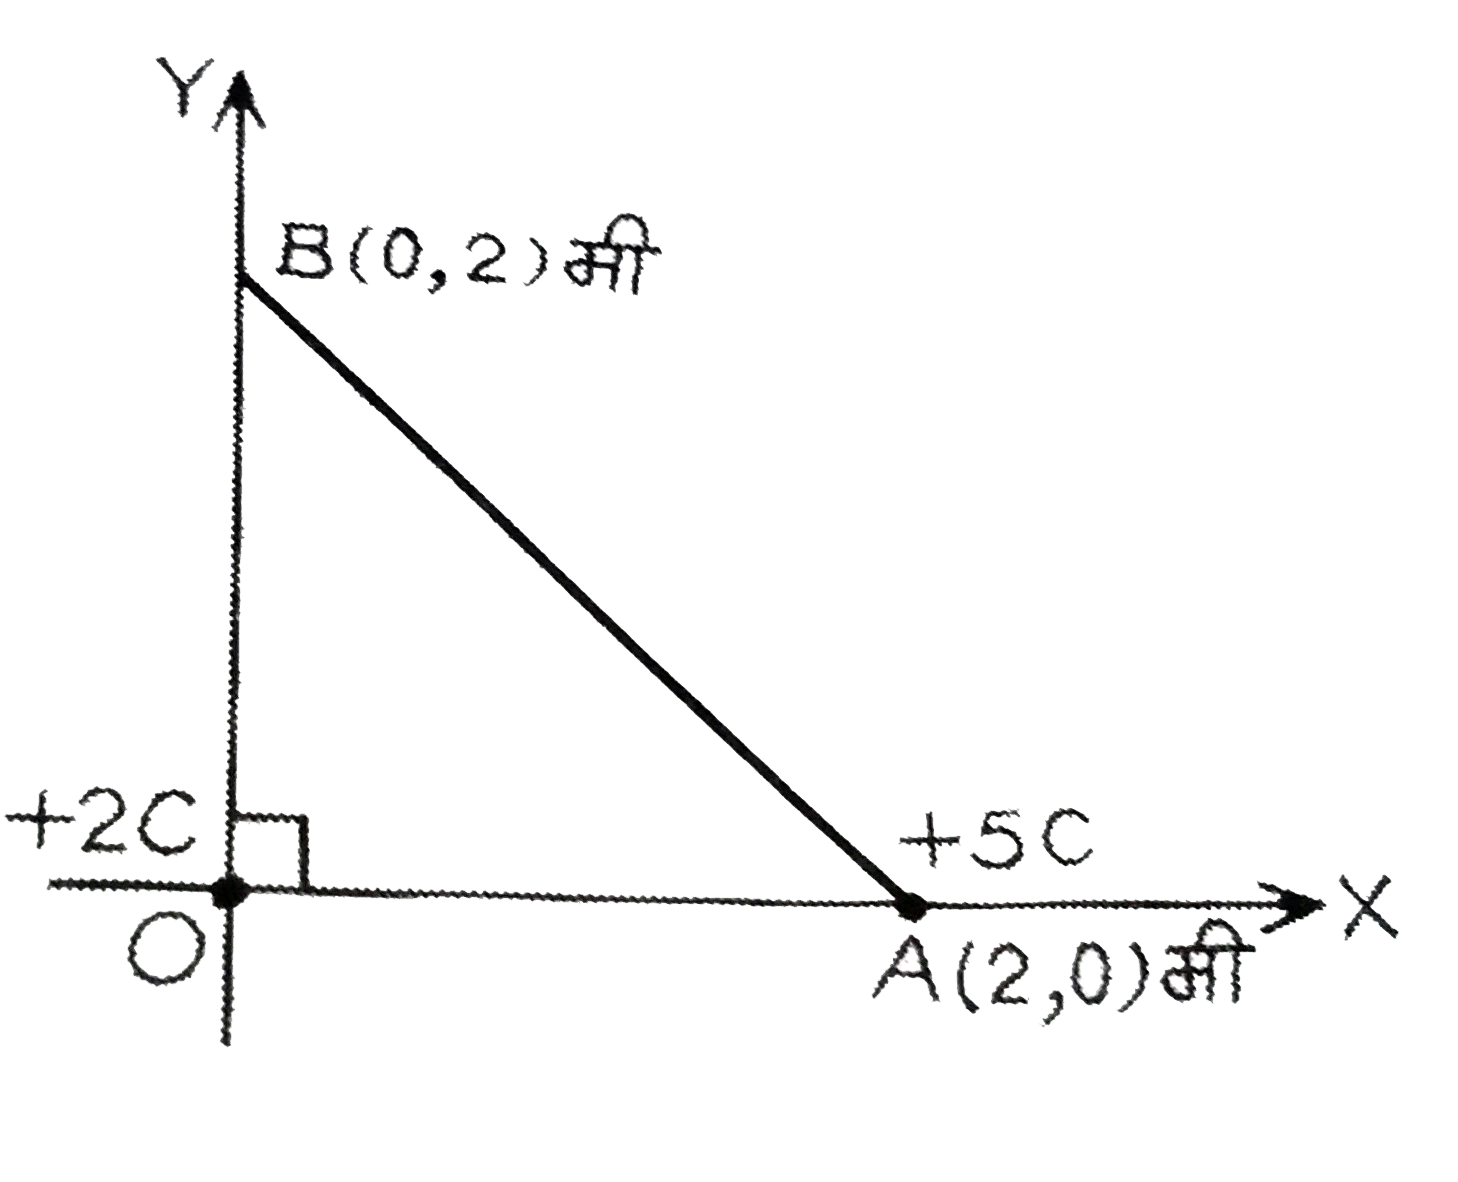 चित्र में दिखाये गये अनुसार, एक आवेश +2C मूल बिंदु O पर स्थित है तथा एक अन्य आवेश +5C , X -अक्ष पर बिंदु A पर स्थित है । बाद का आवेश बिंदु A से Y -अक्ष पर बिंदु B पर लाया जाता है किया गया कार्य है